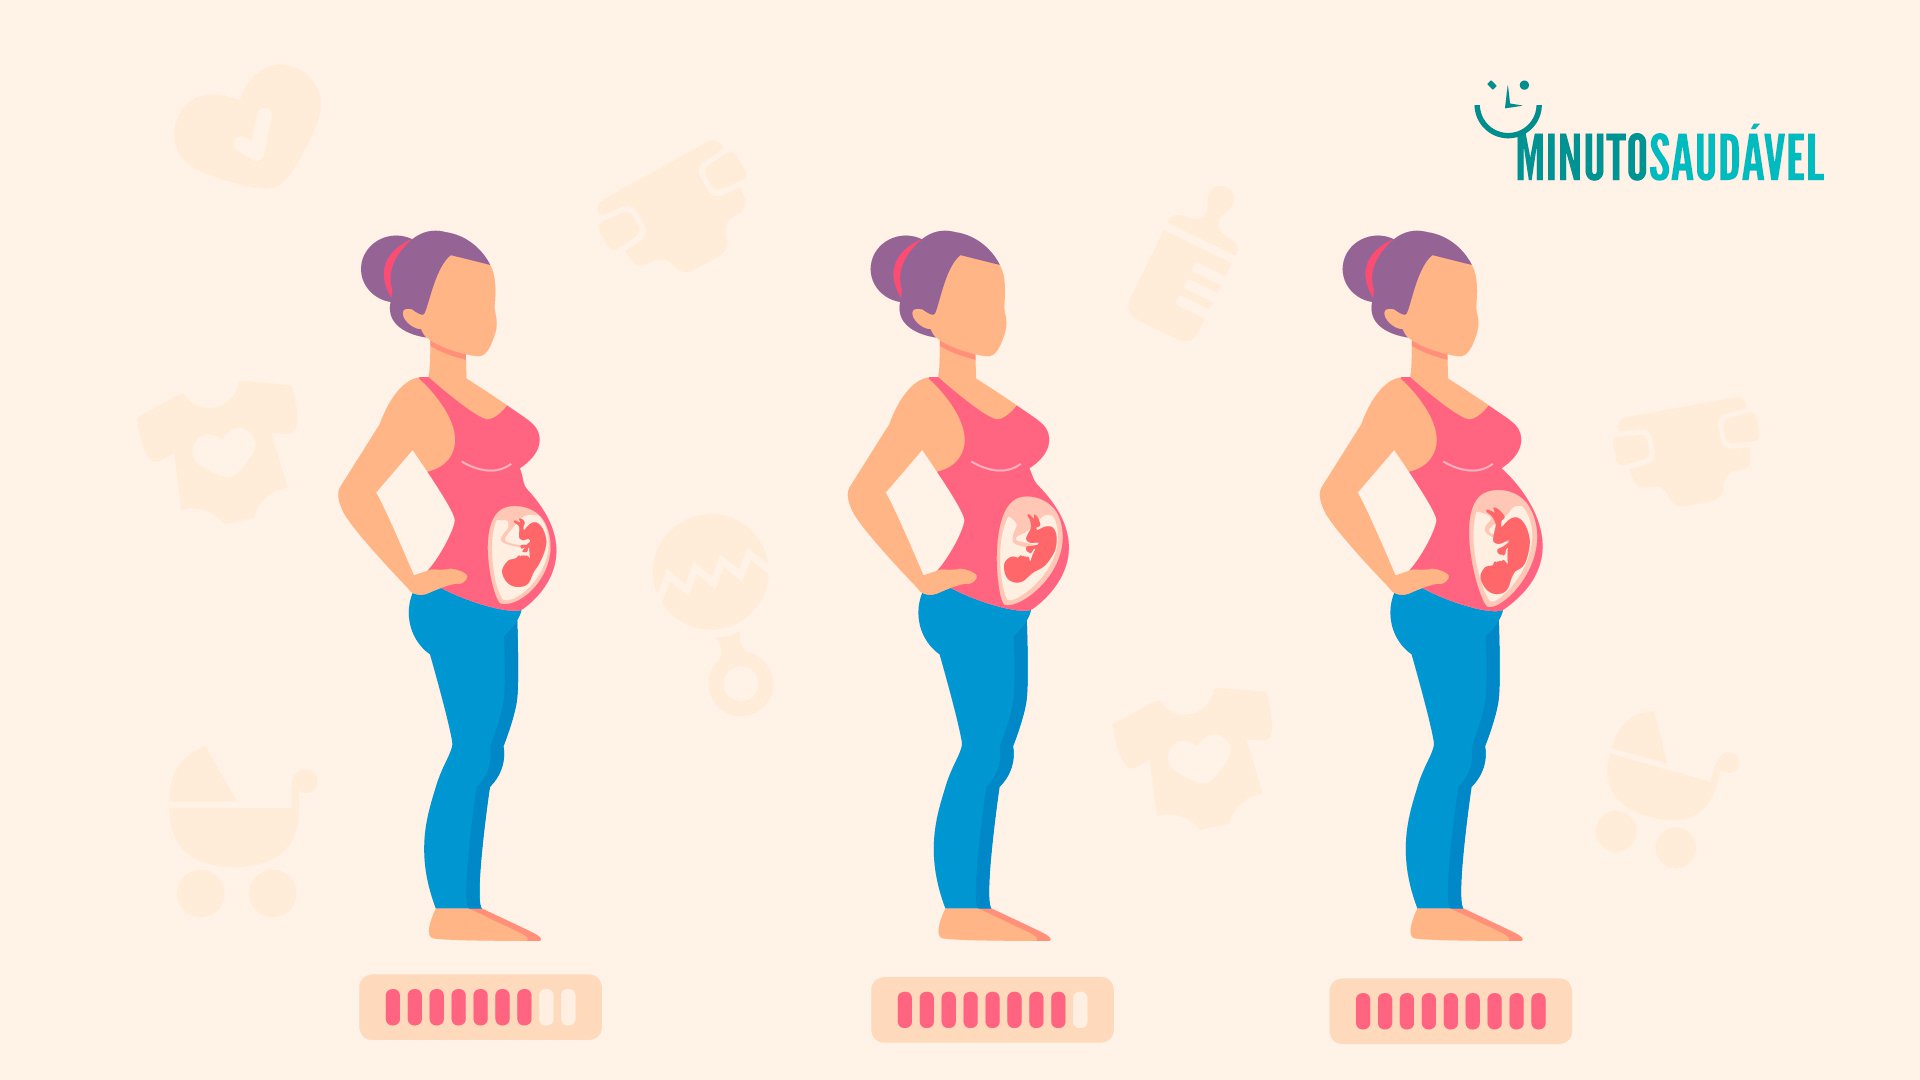 Foto de capa do artigo "Terceiro trimestre de gravidez: conheça os sintomas e exames"